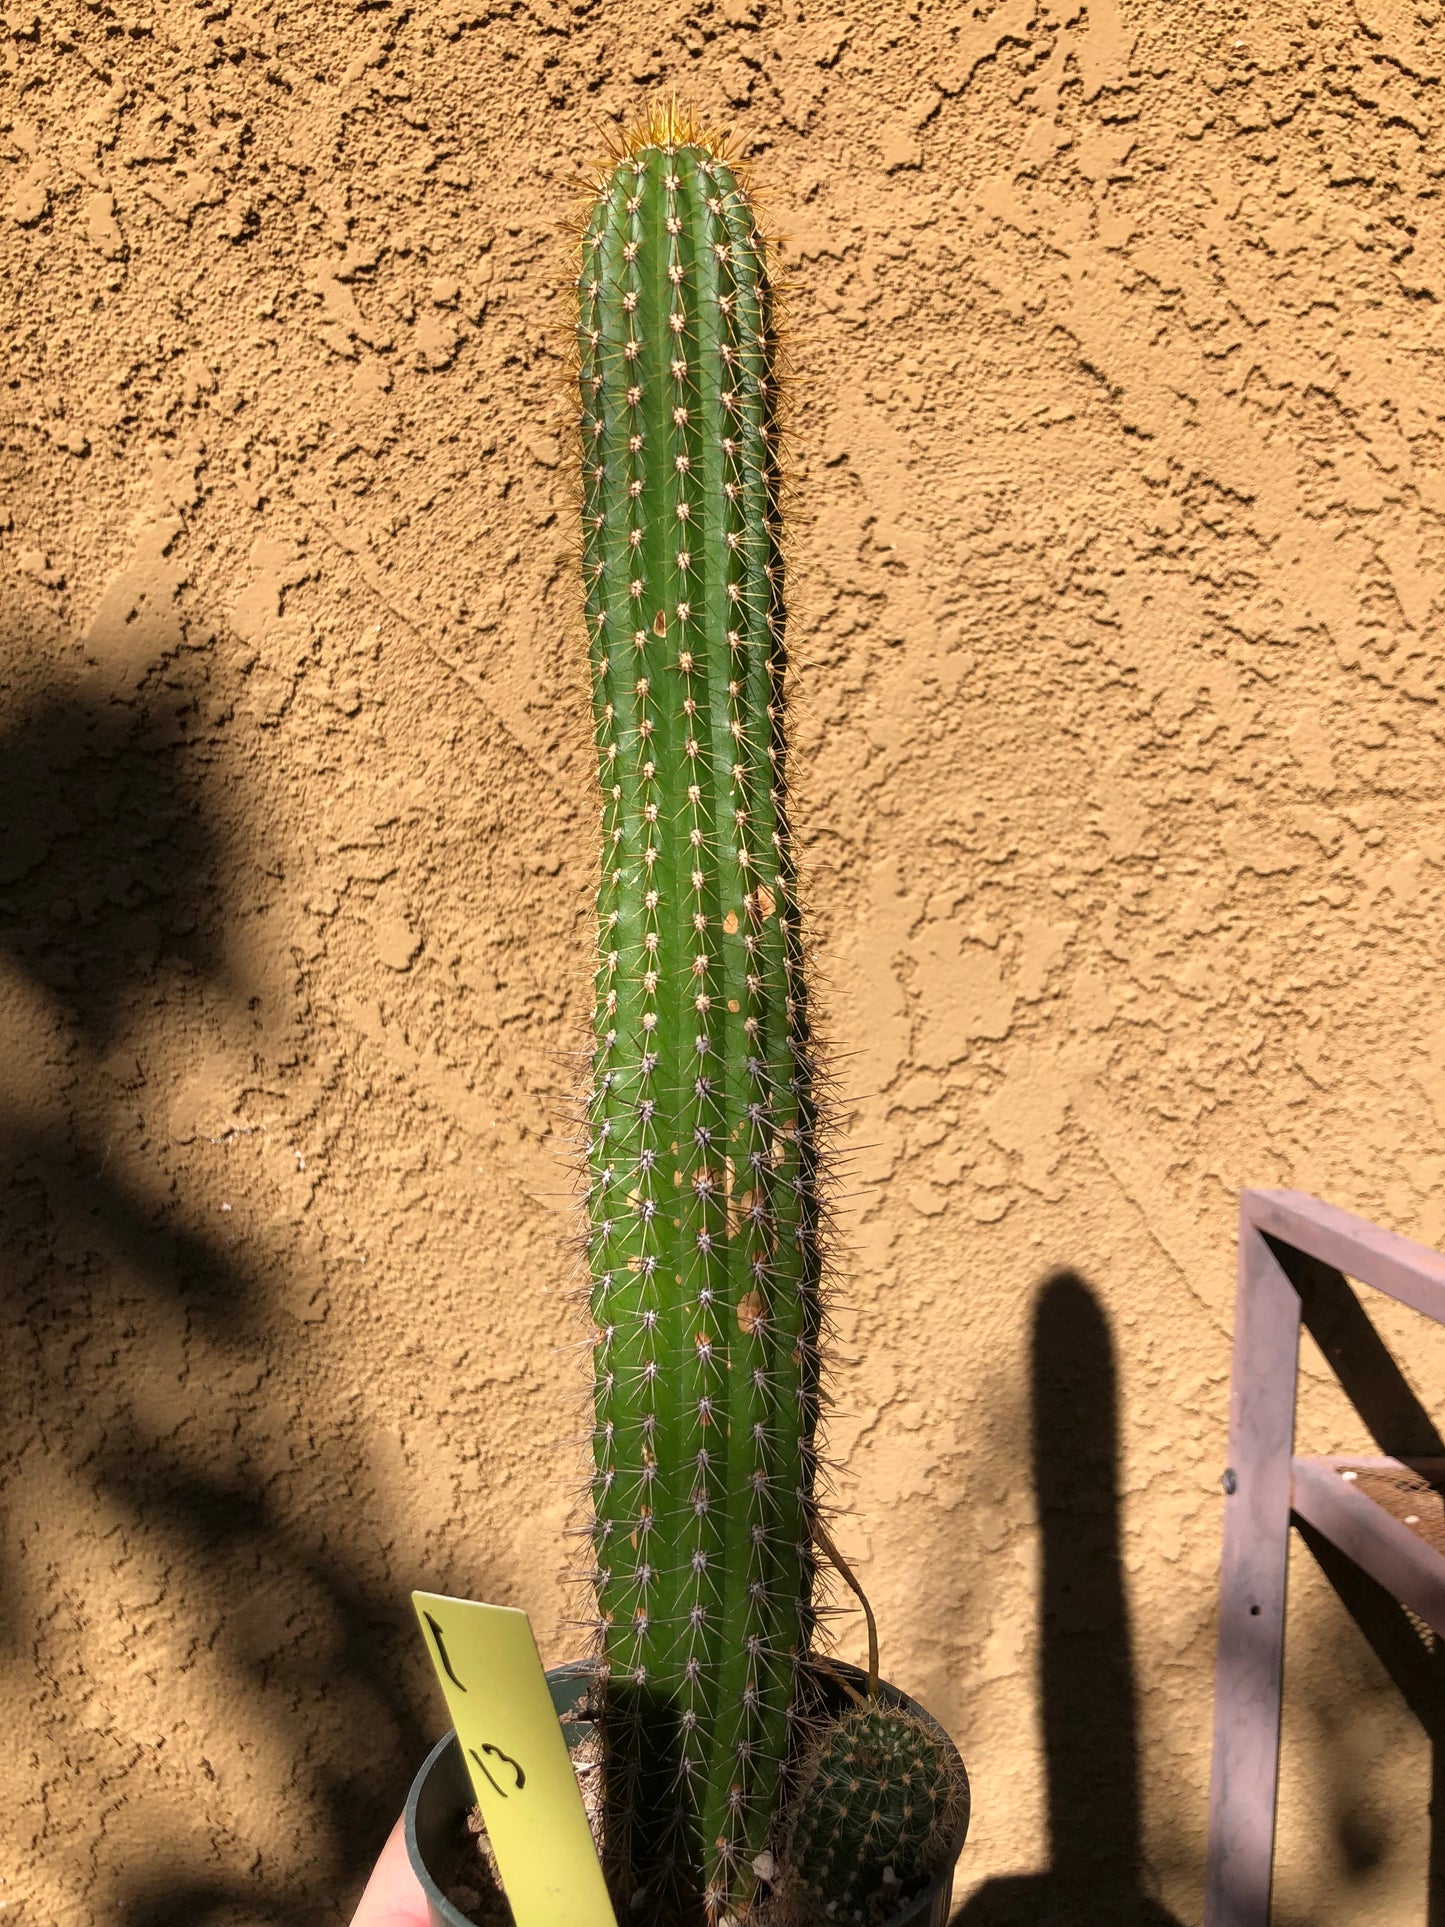 Golden Torch Cactus - Trichocereus spachianus 13" Tall #1Y